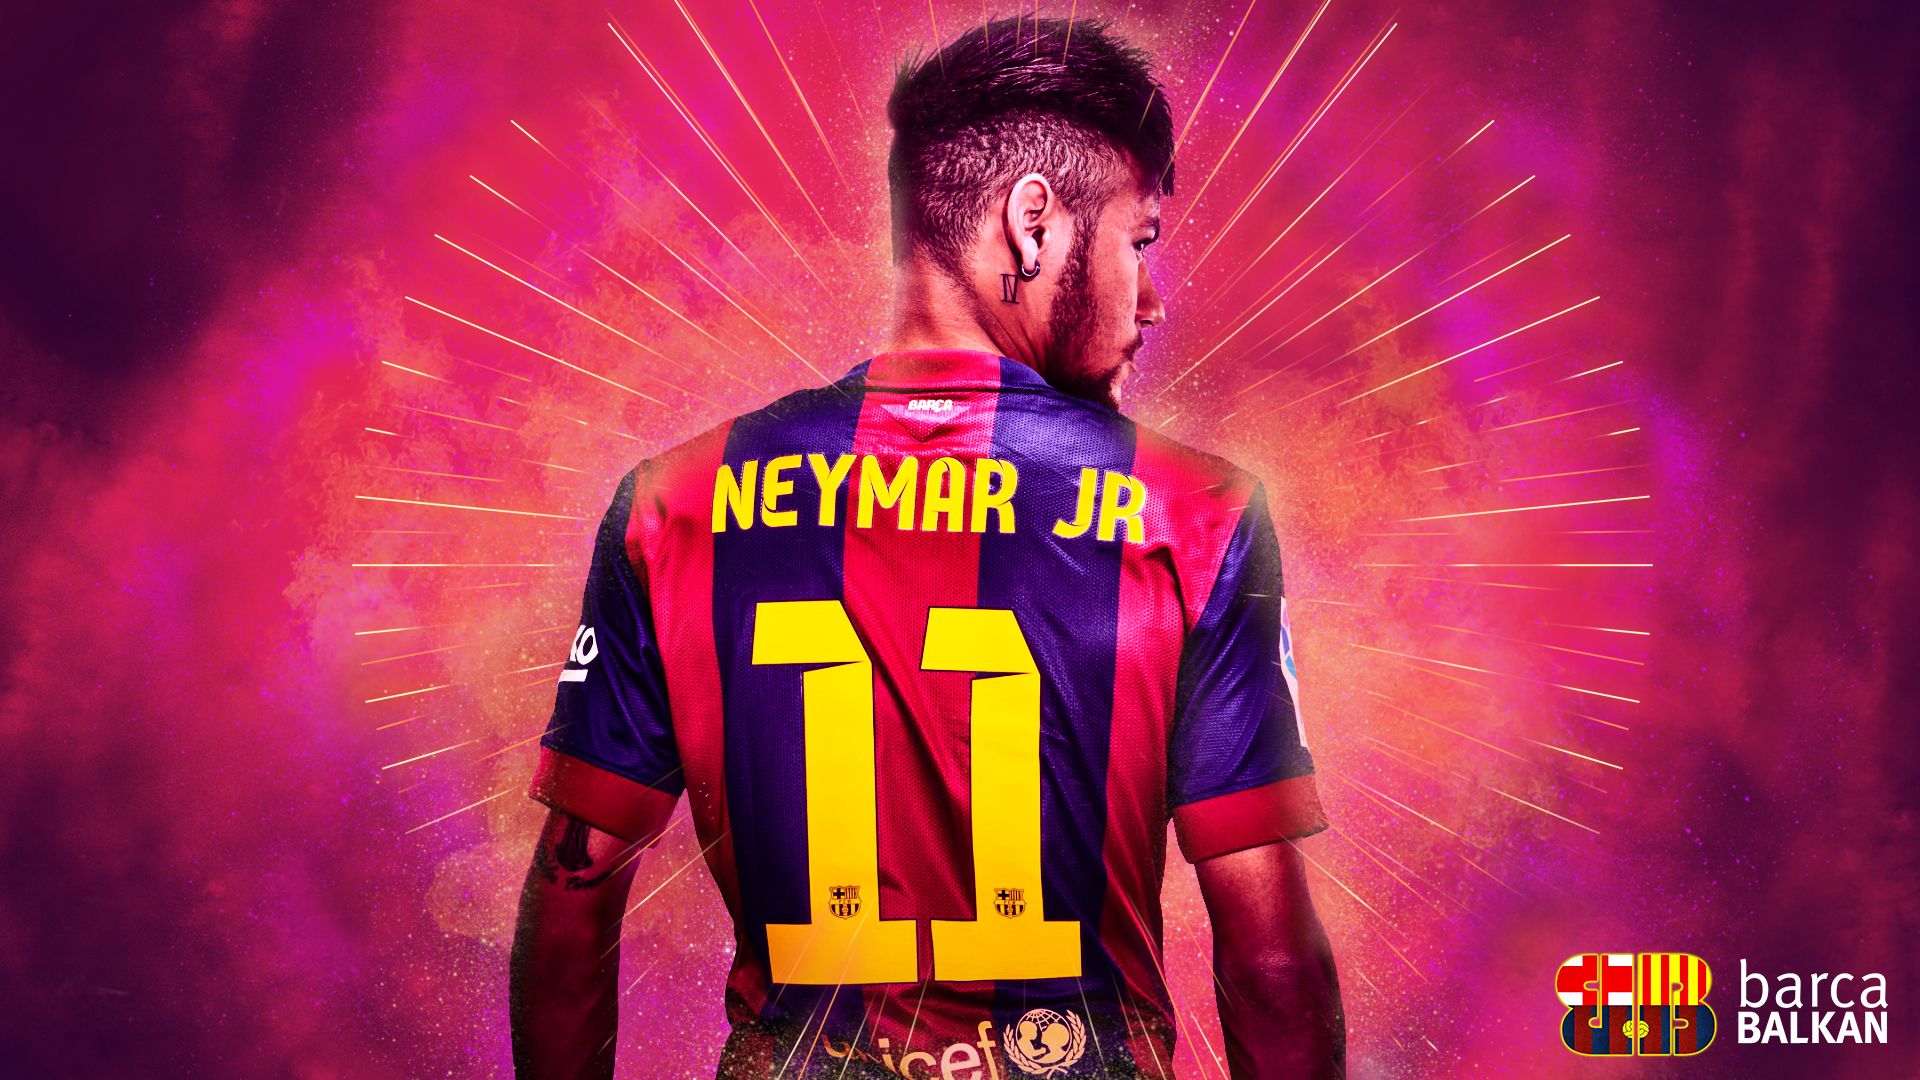 Neymar Fondos de escritorio 1920x1080 | WallpapersExpert.com